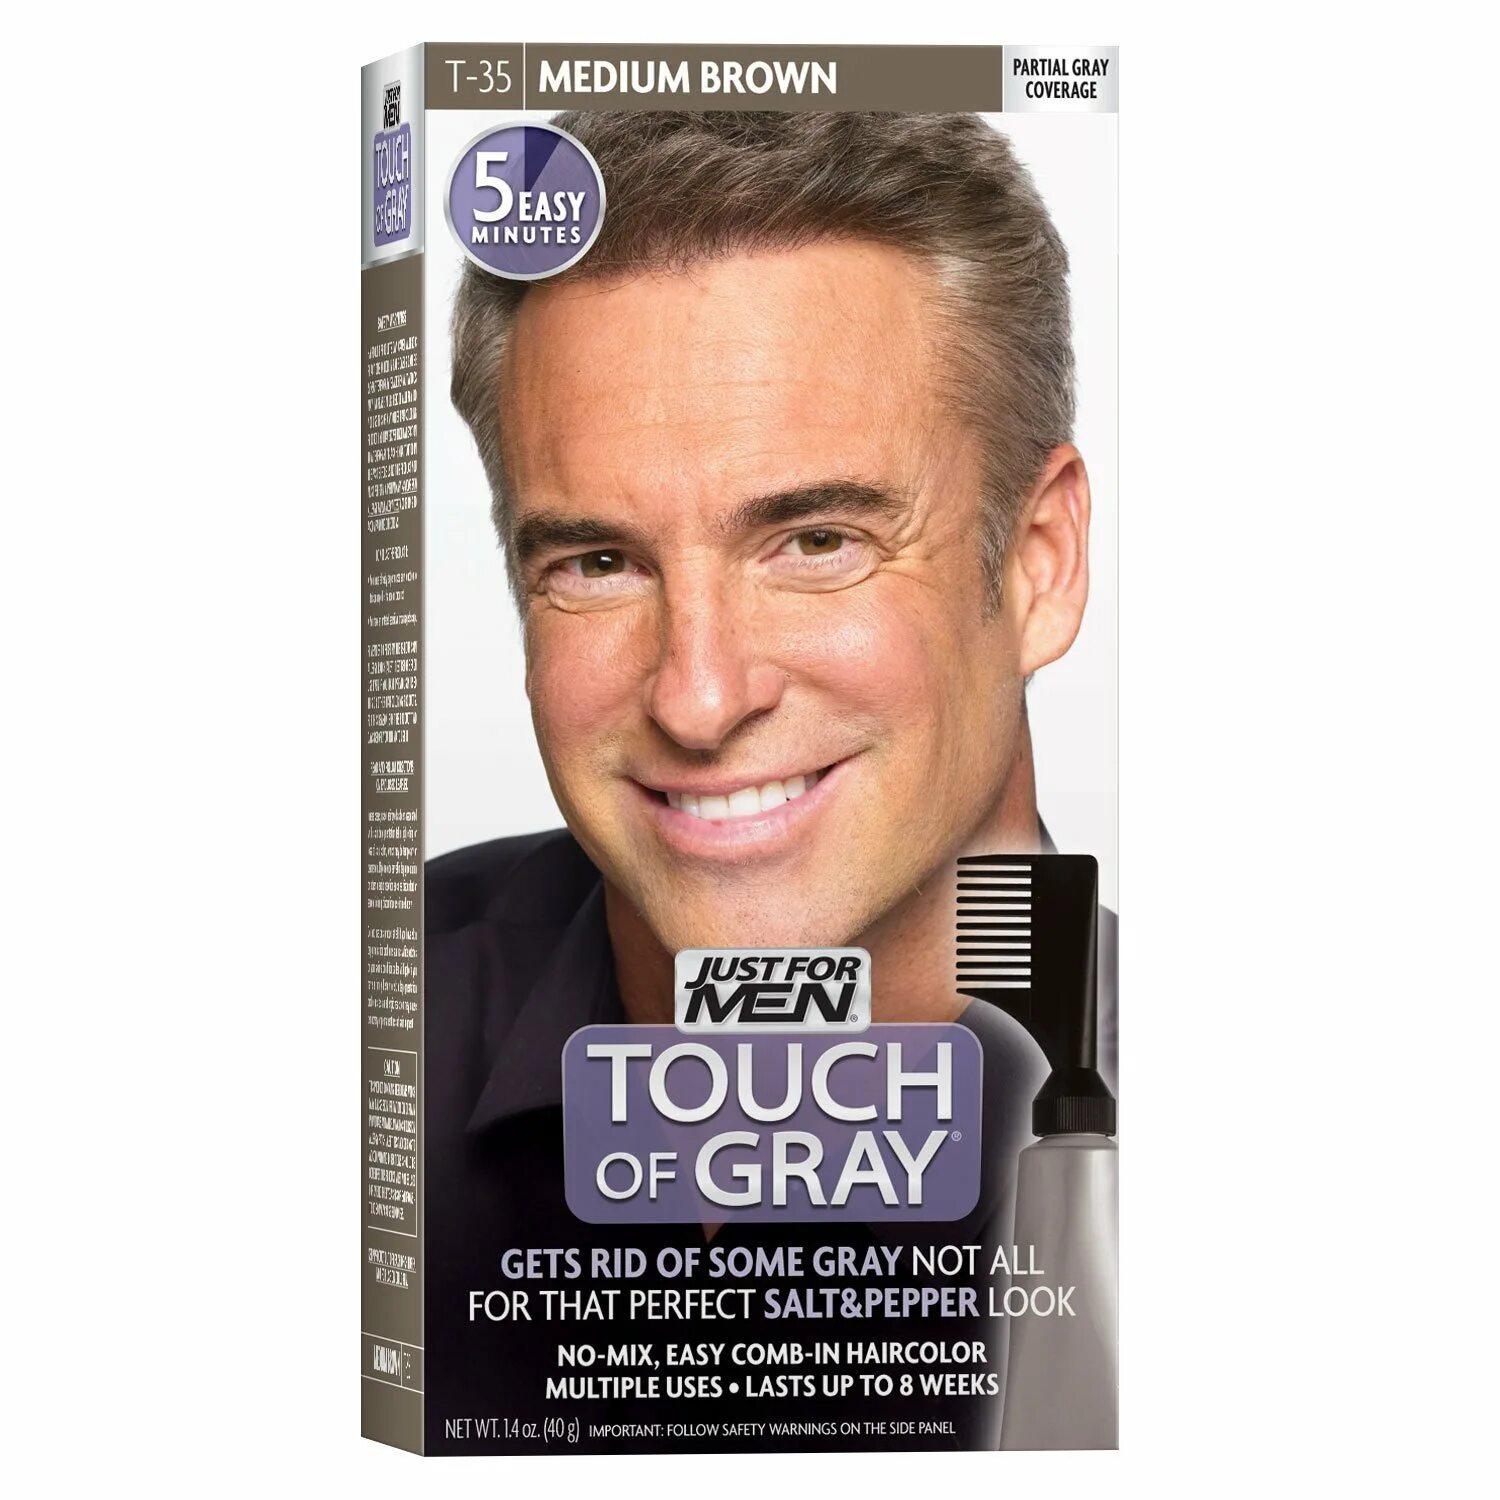 Краска для волос мужская 40. Шампунь краска для седых волос для мужчин. Just for men – мужская краска для волос. Краска для волос мужская tach of Grey. Цвет седины для волос для мужчин.